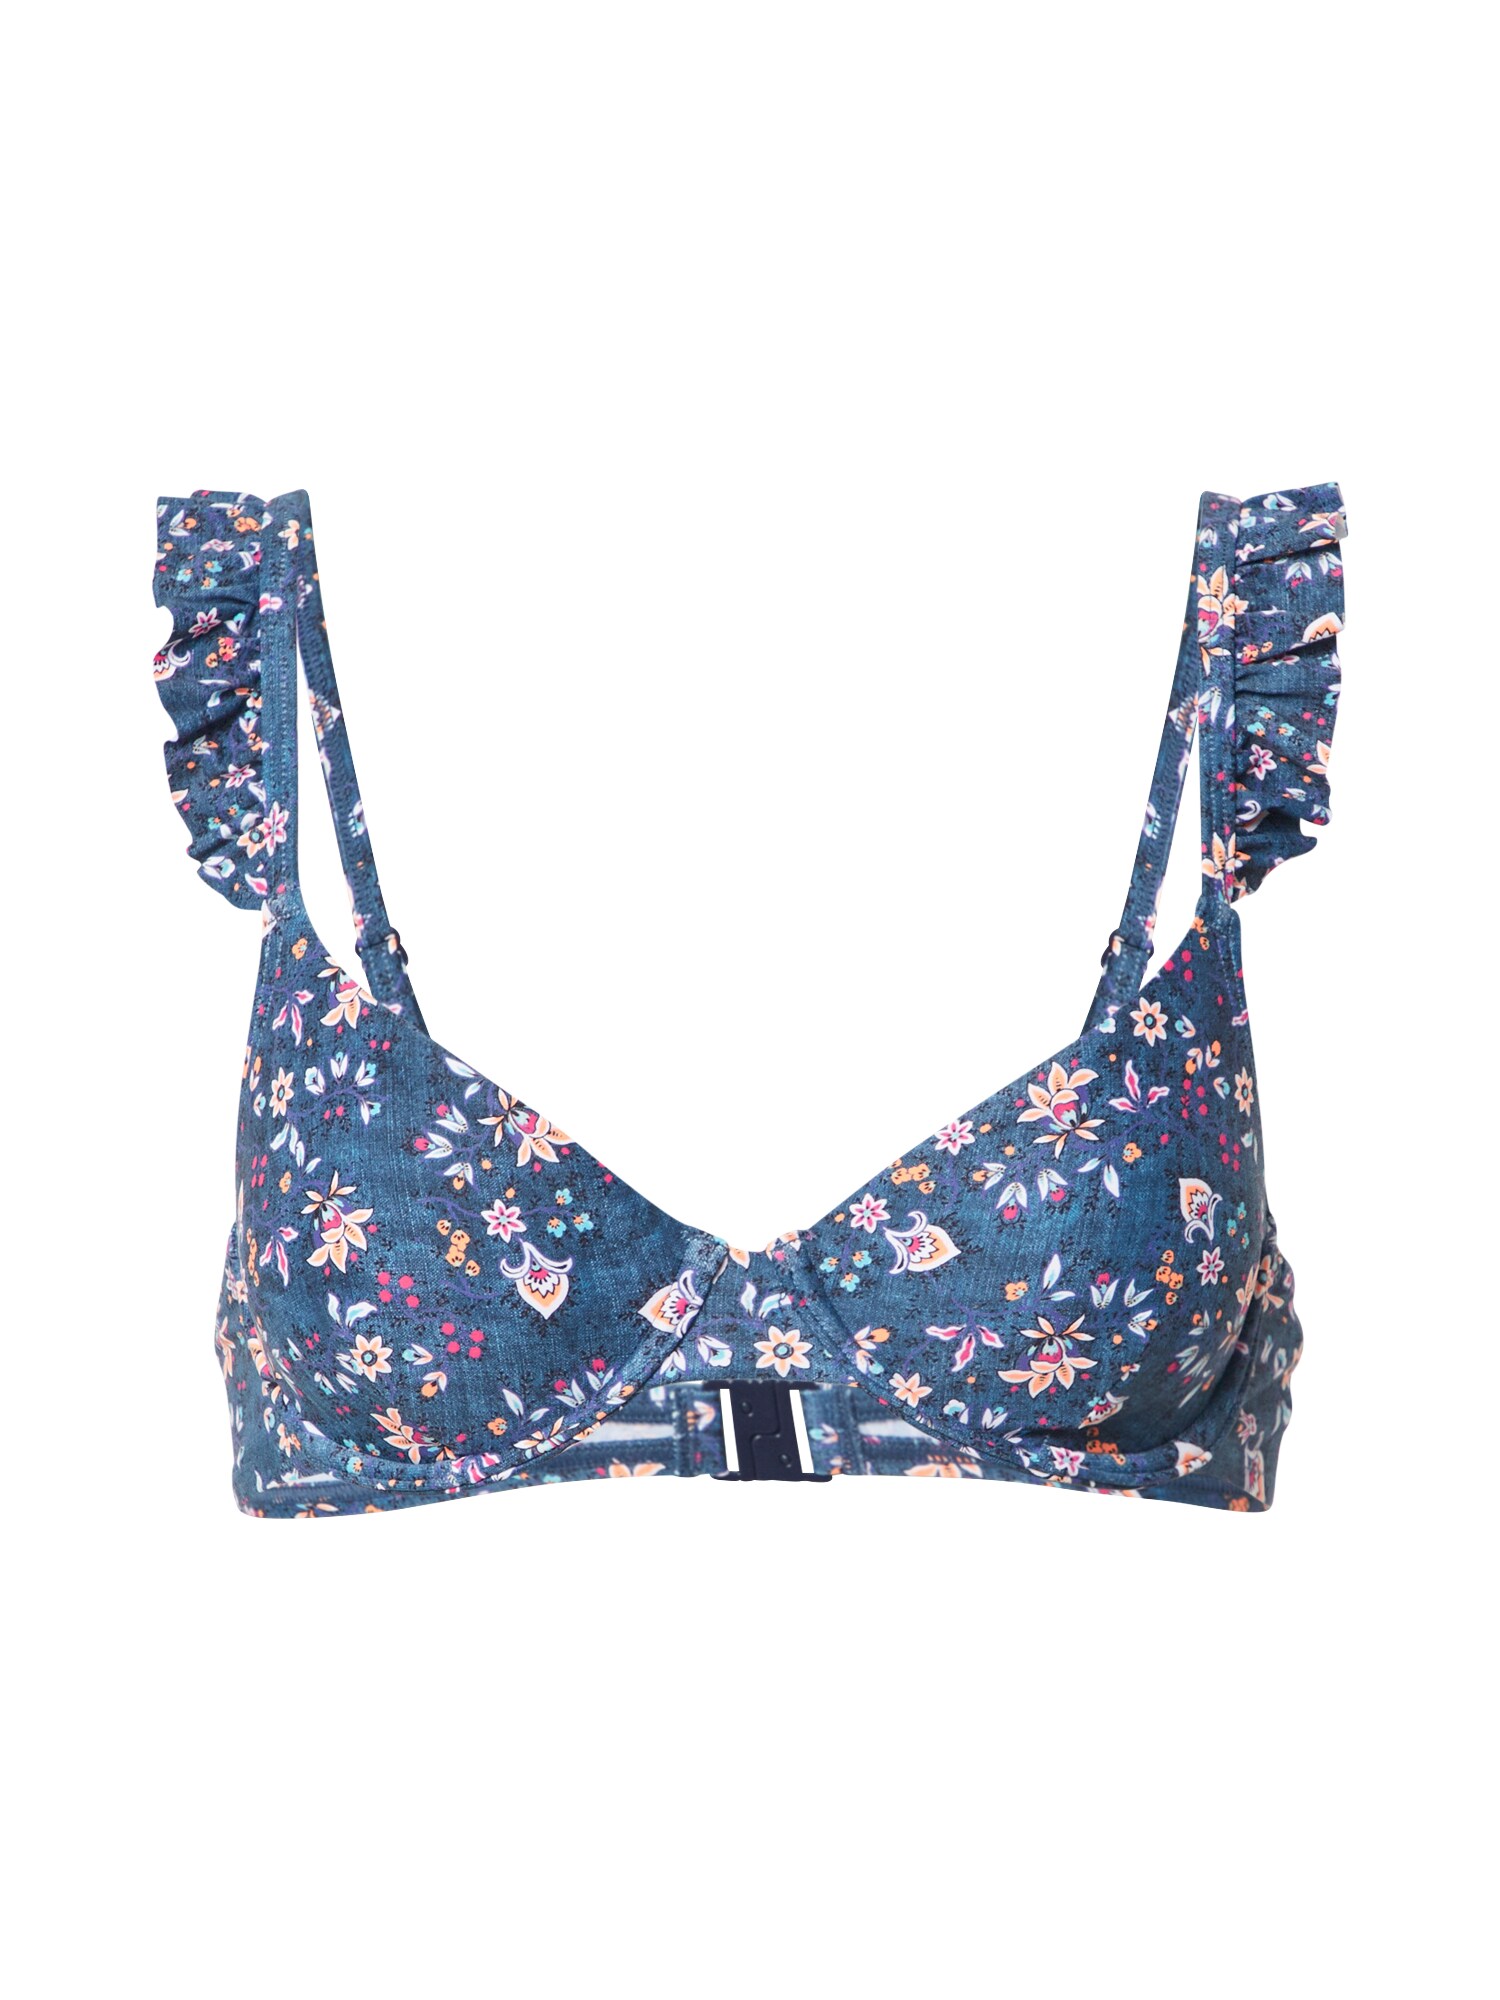 ESPRIT Bikinio viršutinė dalis 'JONES BEACH'  mėlyna / pilka / rožių spalva